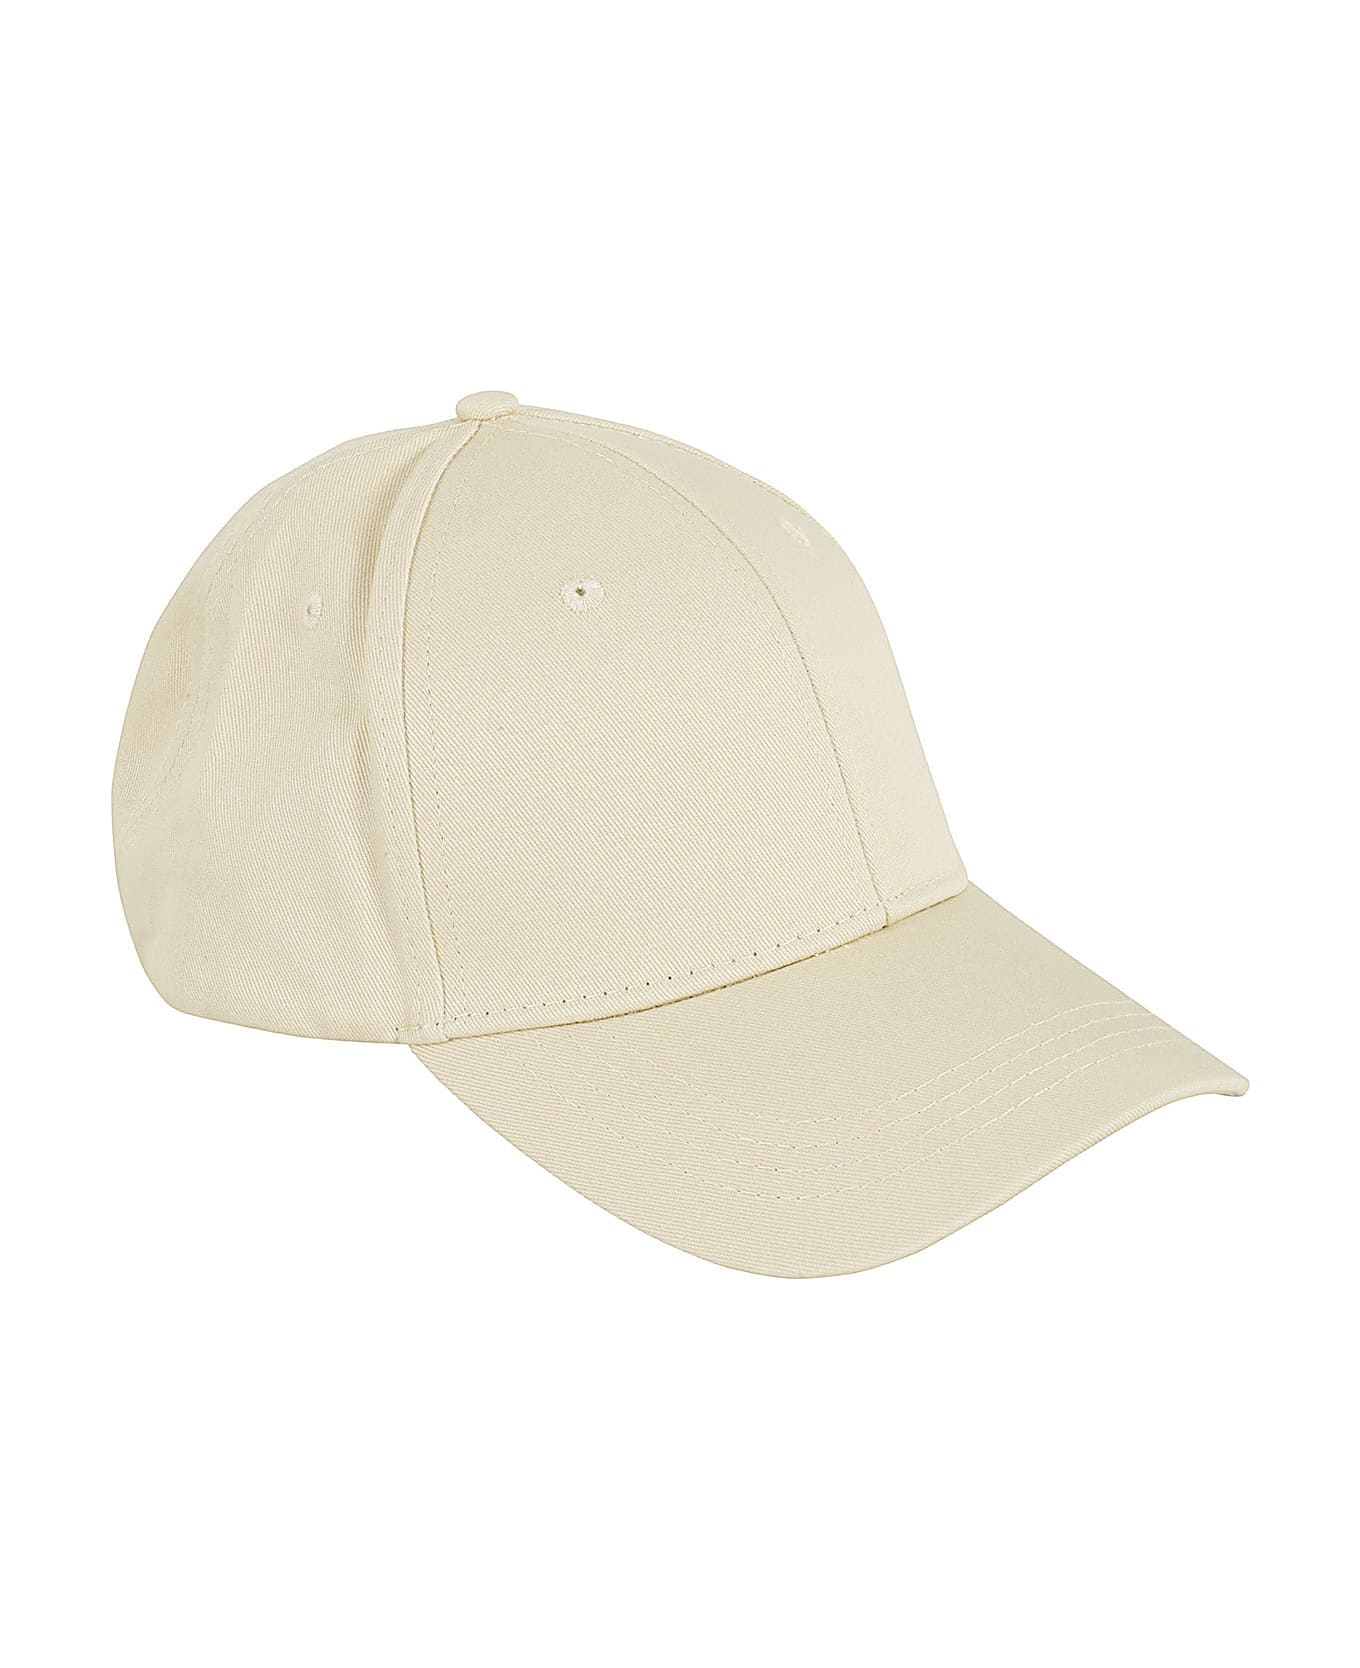 Aspesi Cappello Mod 2c01 - Coloniale  帽子